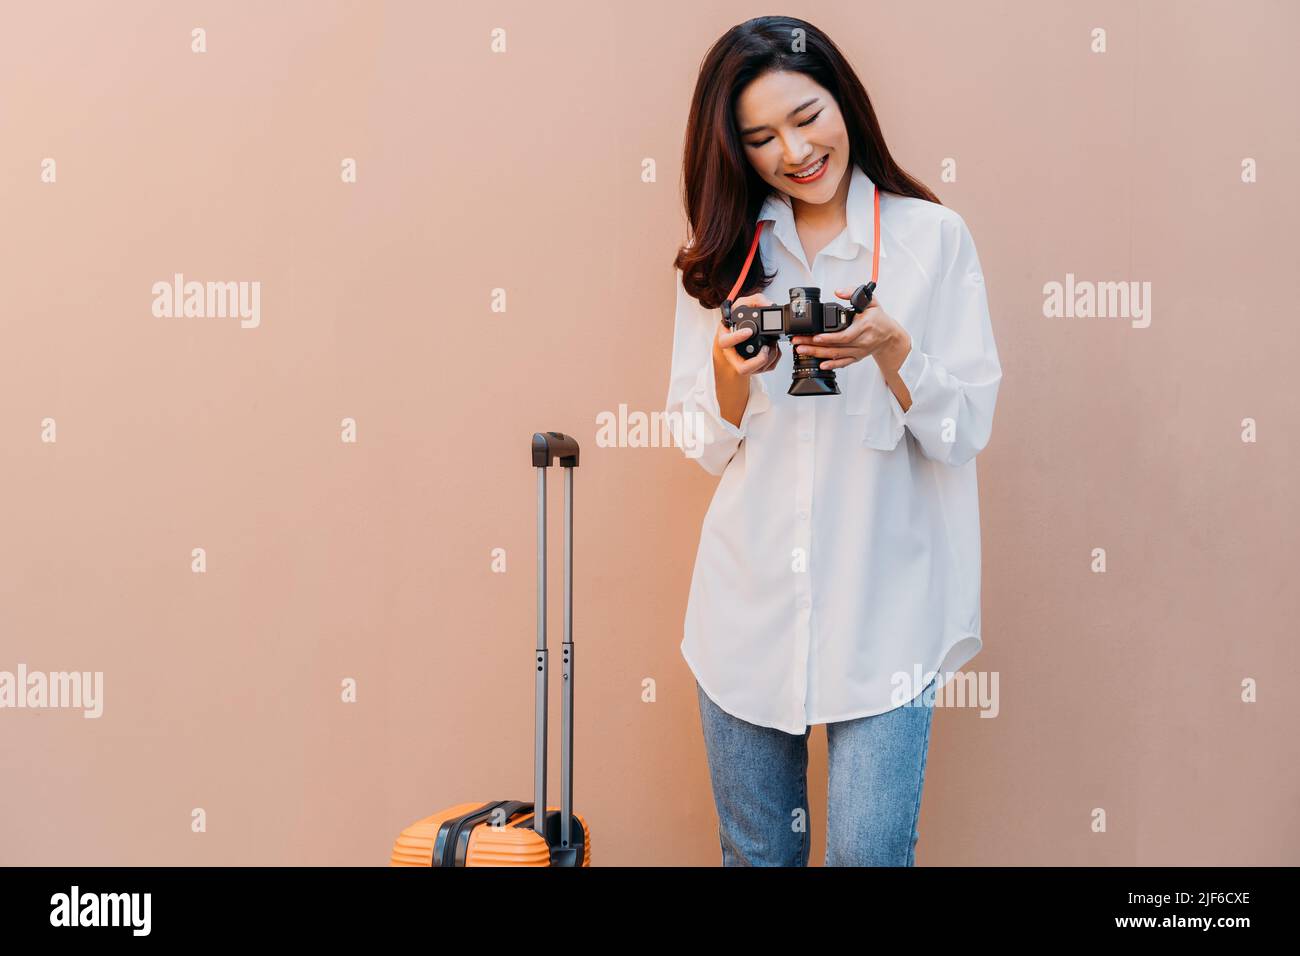 Junge alleinreisende asiatische Frau, die die Fotos aus ihrem Urlaub vor der Kamera mit einer sandfarbenen Wand im Hintergrund und einem orangefarbenen Koffer neben ihr in legerer Kleidung mit Platz für Kopien überprüft Stockfoto